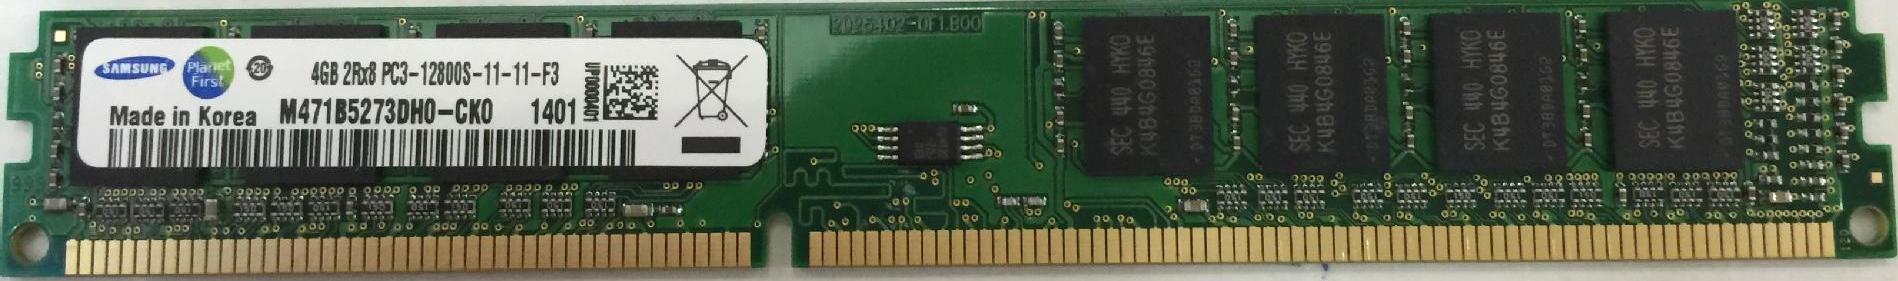 Оперативная память Samsung 4GB 2Rx8 PC3-12800U-11-11-B1 (M378b5273dho-cko)